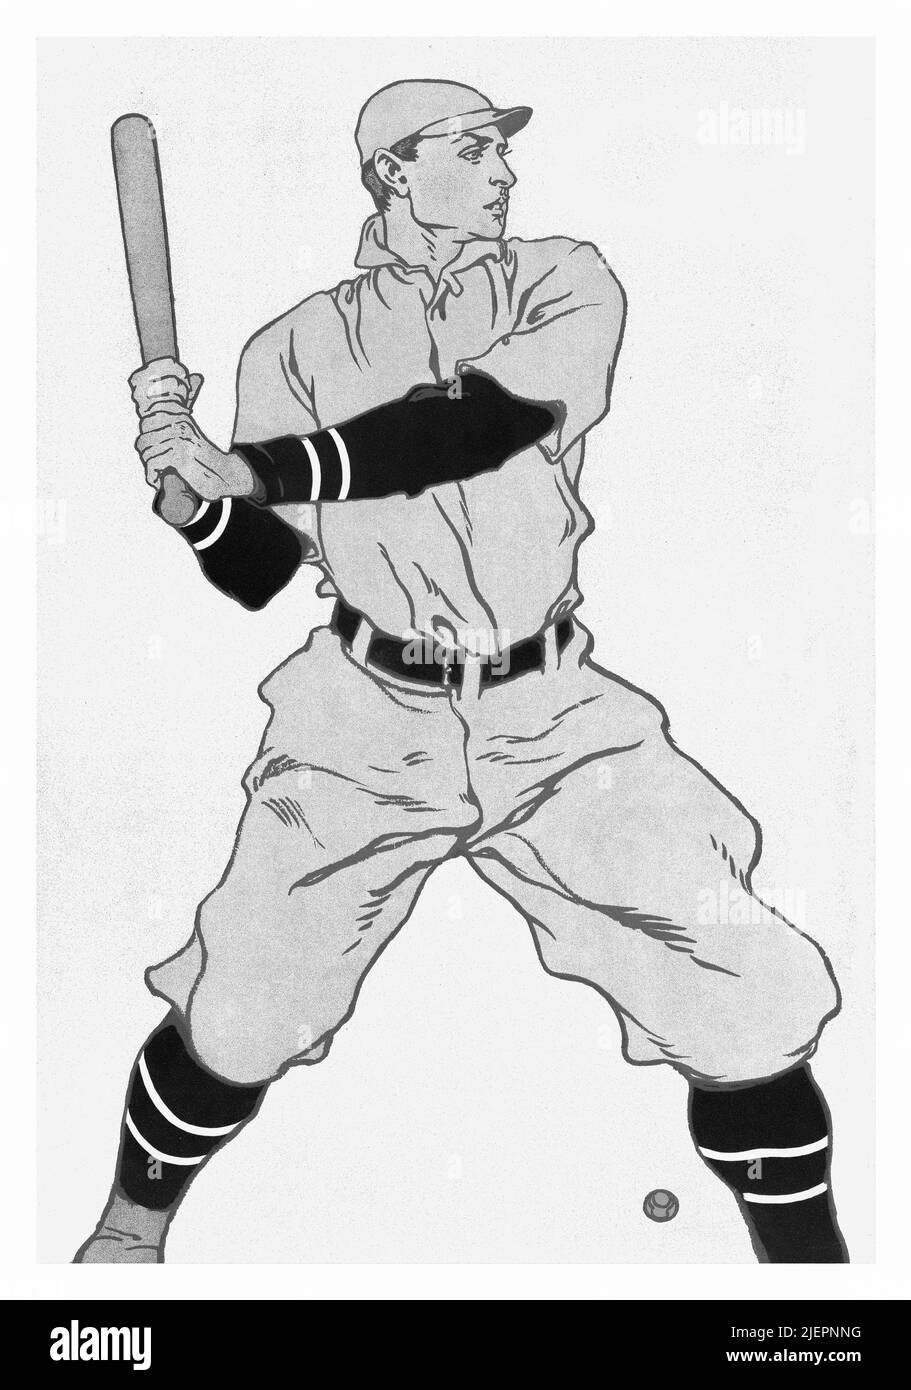 Une illustration du début du 20th siècle par Edward Penfield (1866-1925) sur la couverture de collier's, un magazine d'intérêt général américain présentant une batte dans le jeu de baseball. Banque D'Images